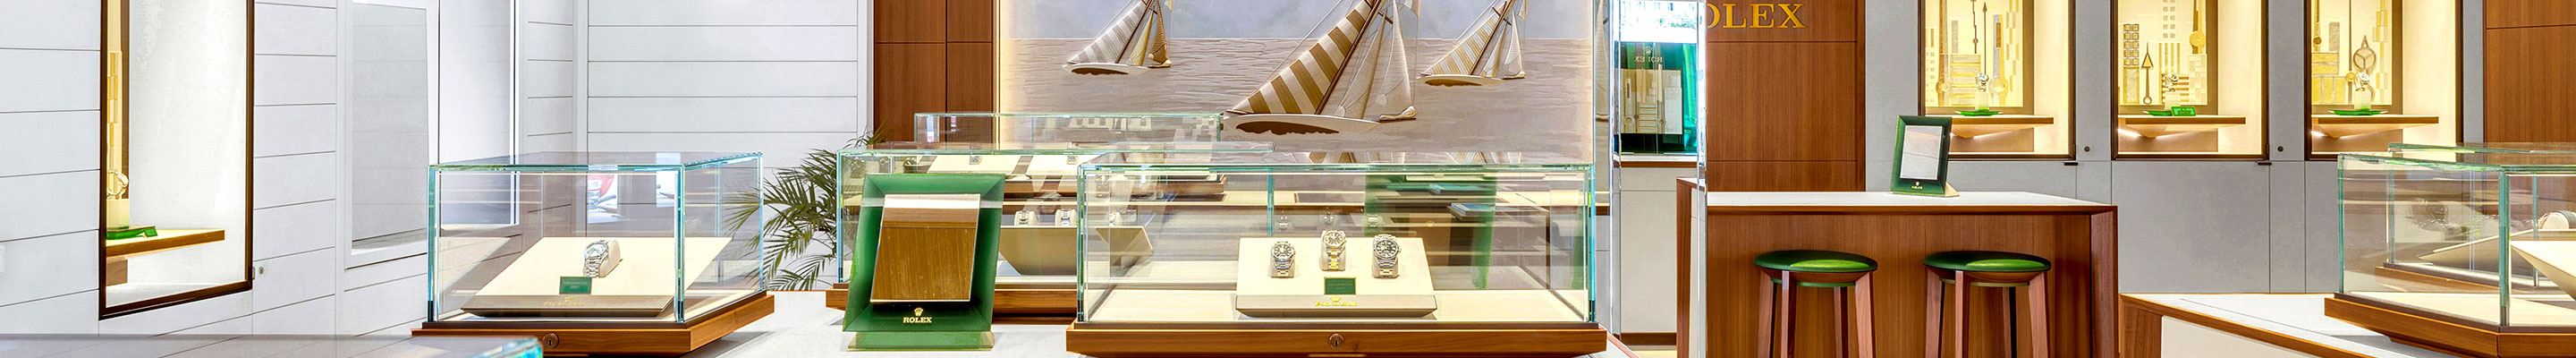 Rolex Boutique Saint-Barthélemy - Goldfinger Jewelry